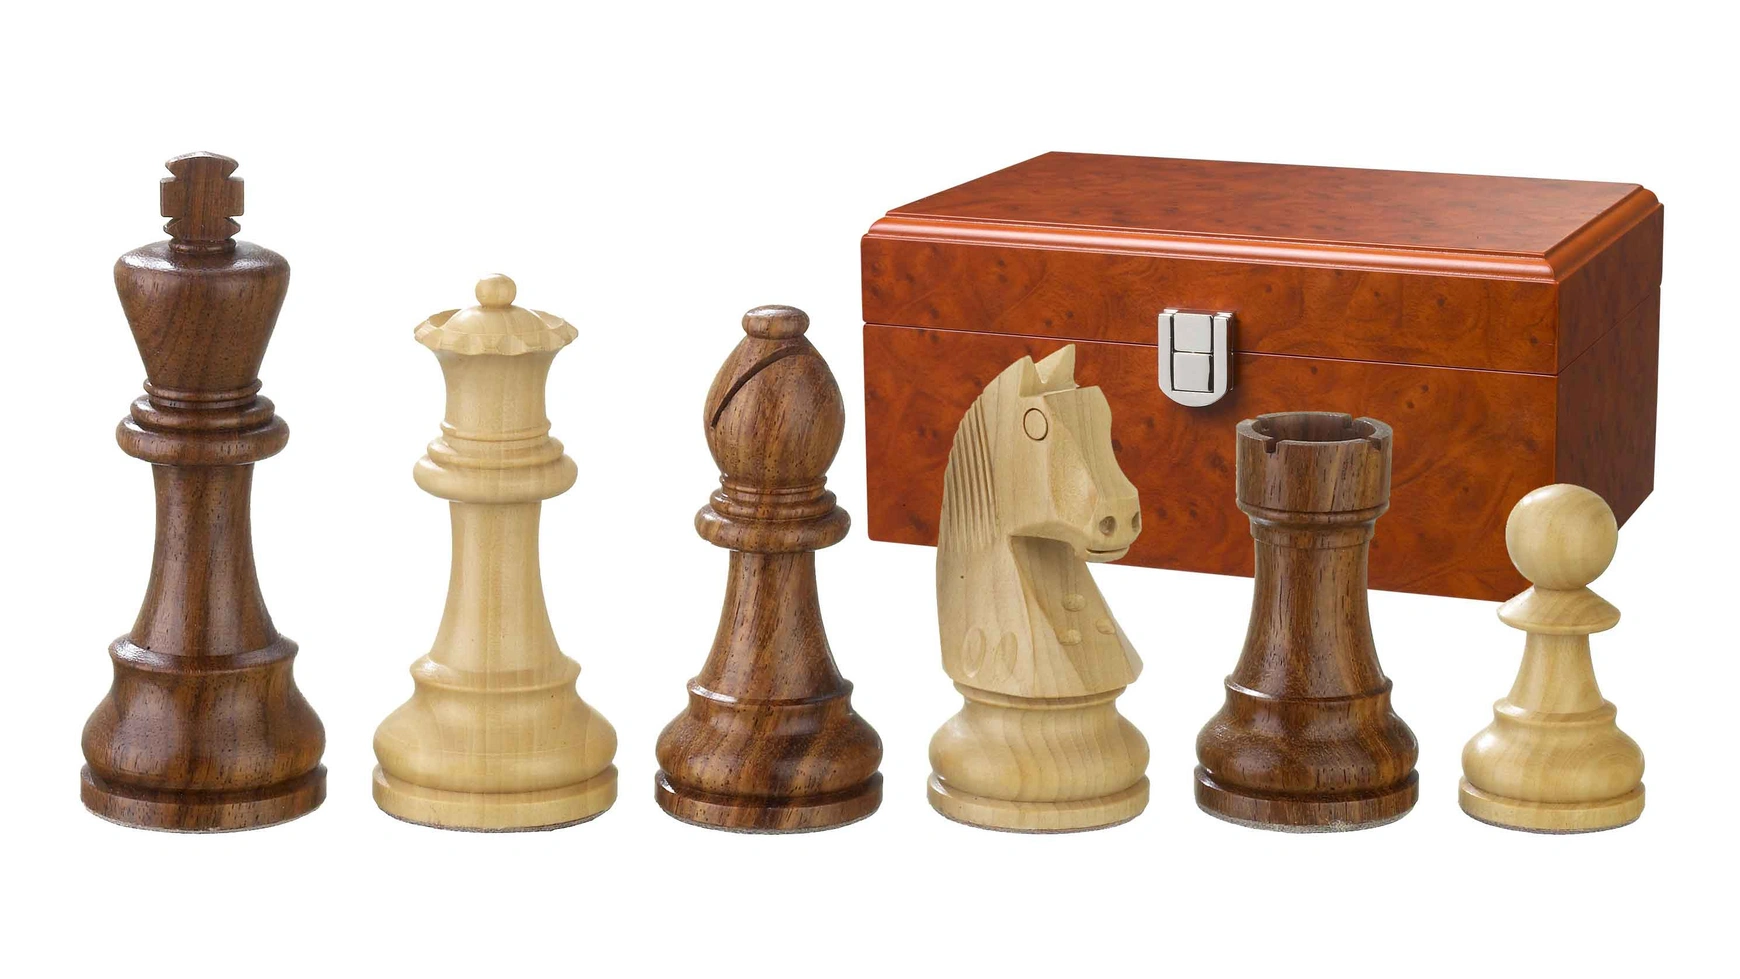 Artus, kh 95 мм, шахматные фигуры в деревянной коробке